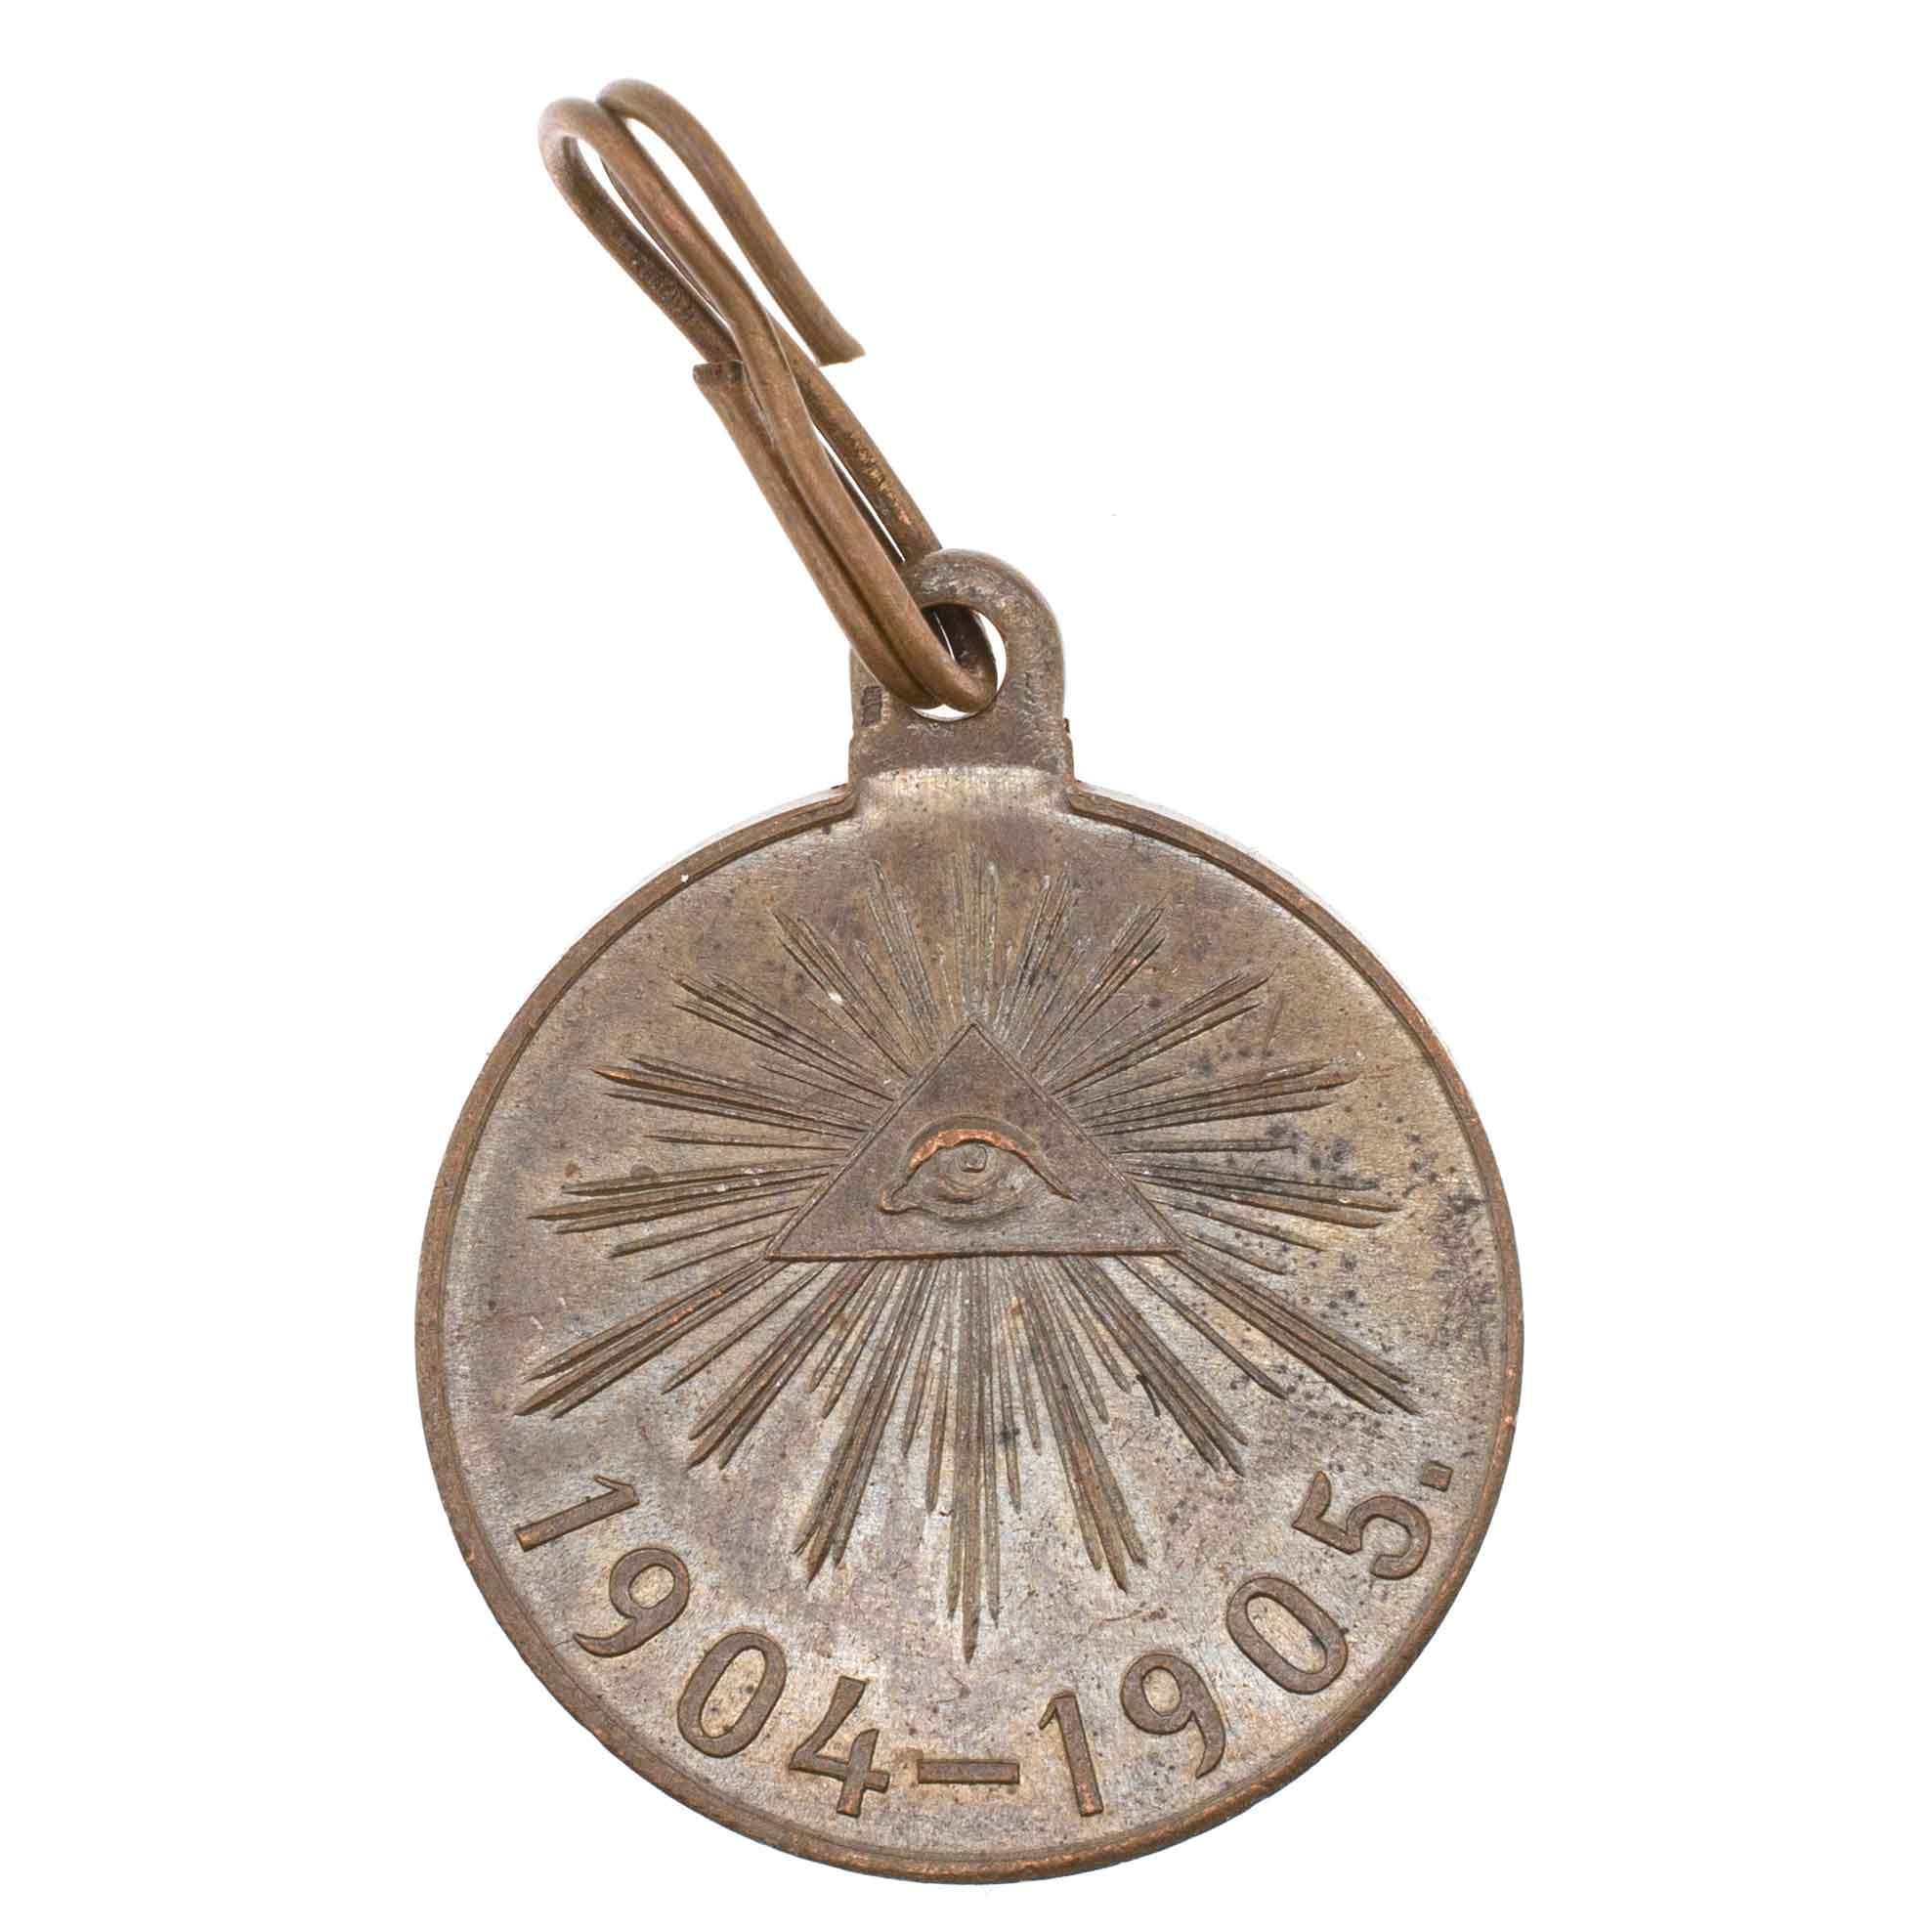 Медаль "В память Русско - Японской Войны 1904 - 1905 гг". Тёмная бронза.